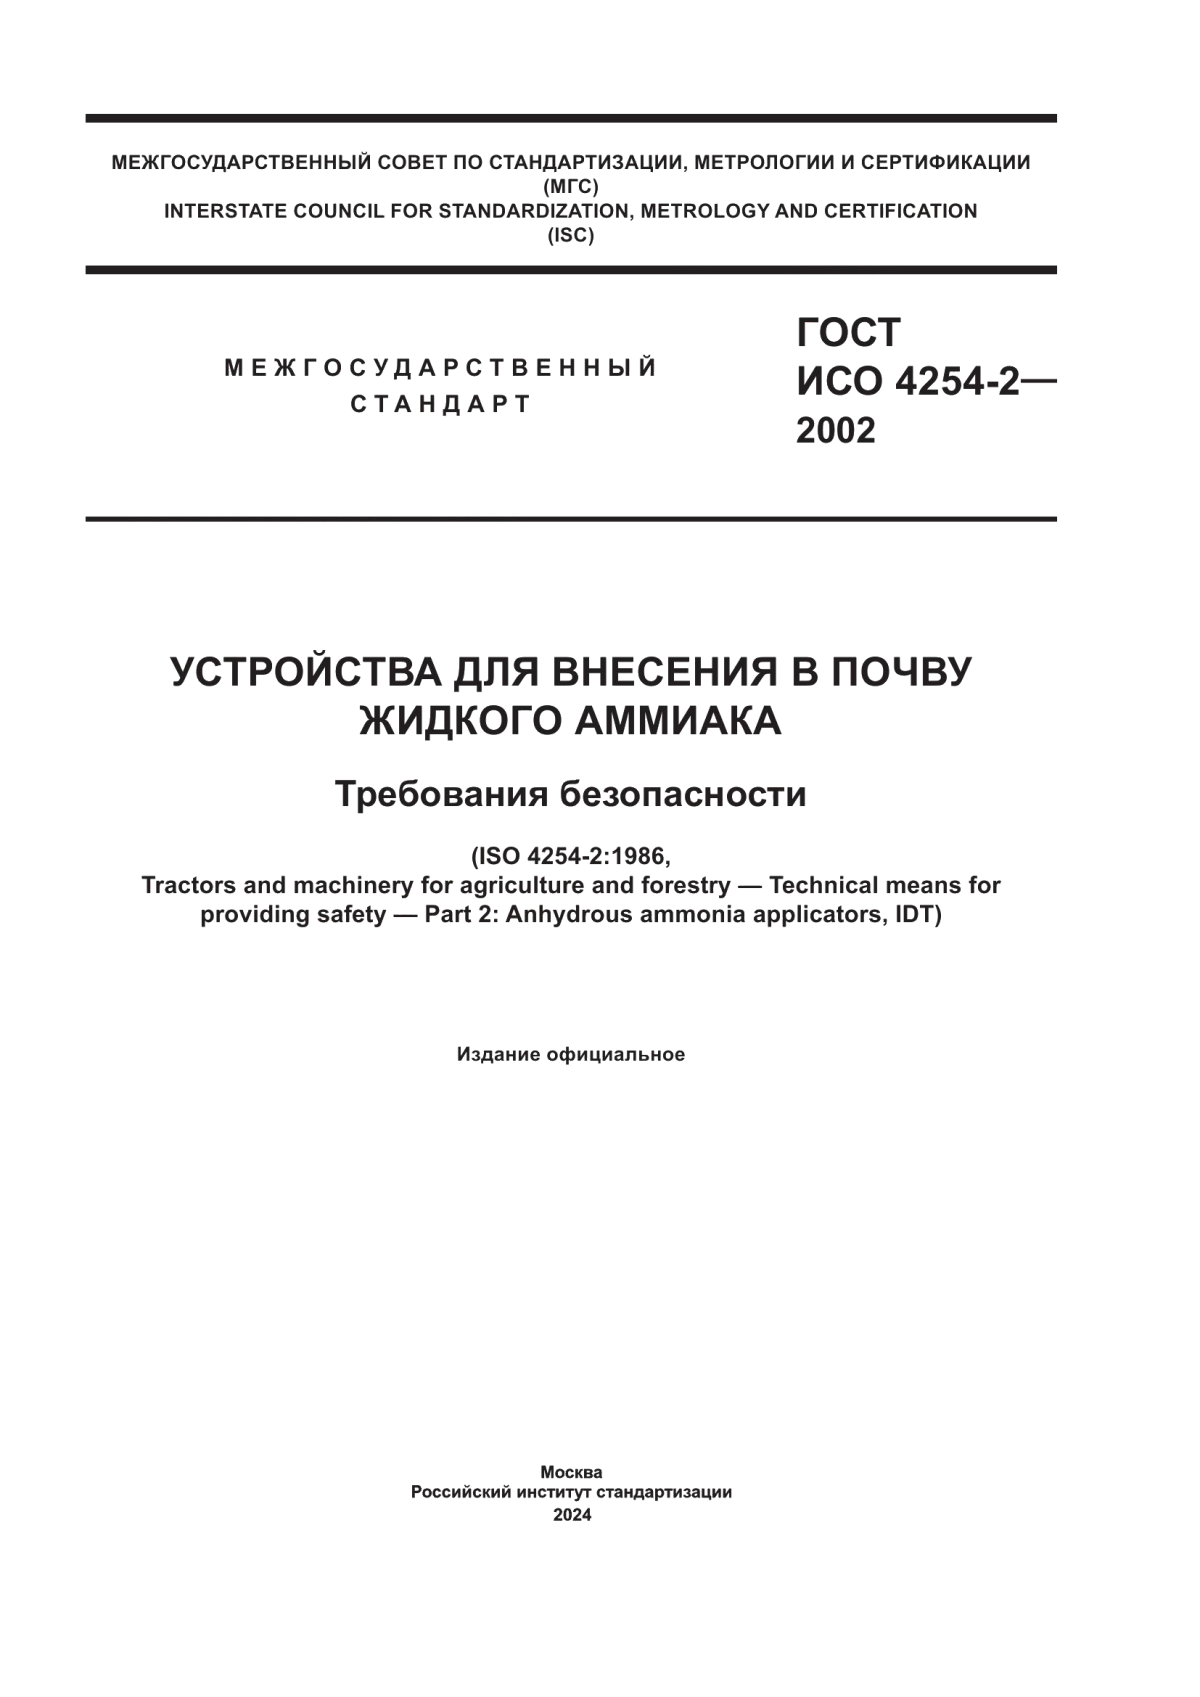 ГОСТ ИСО 4254-2-2002 Устройства для внесения в почву жидкого аммиака. Требования безопасности